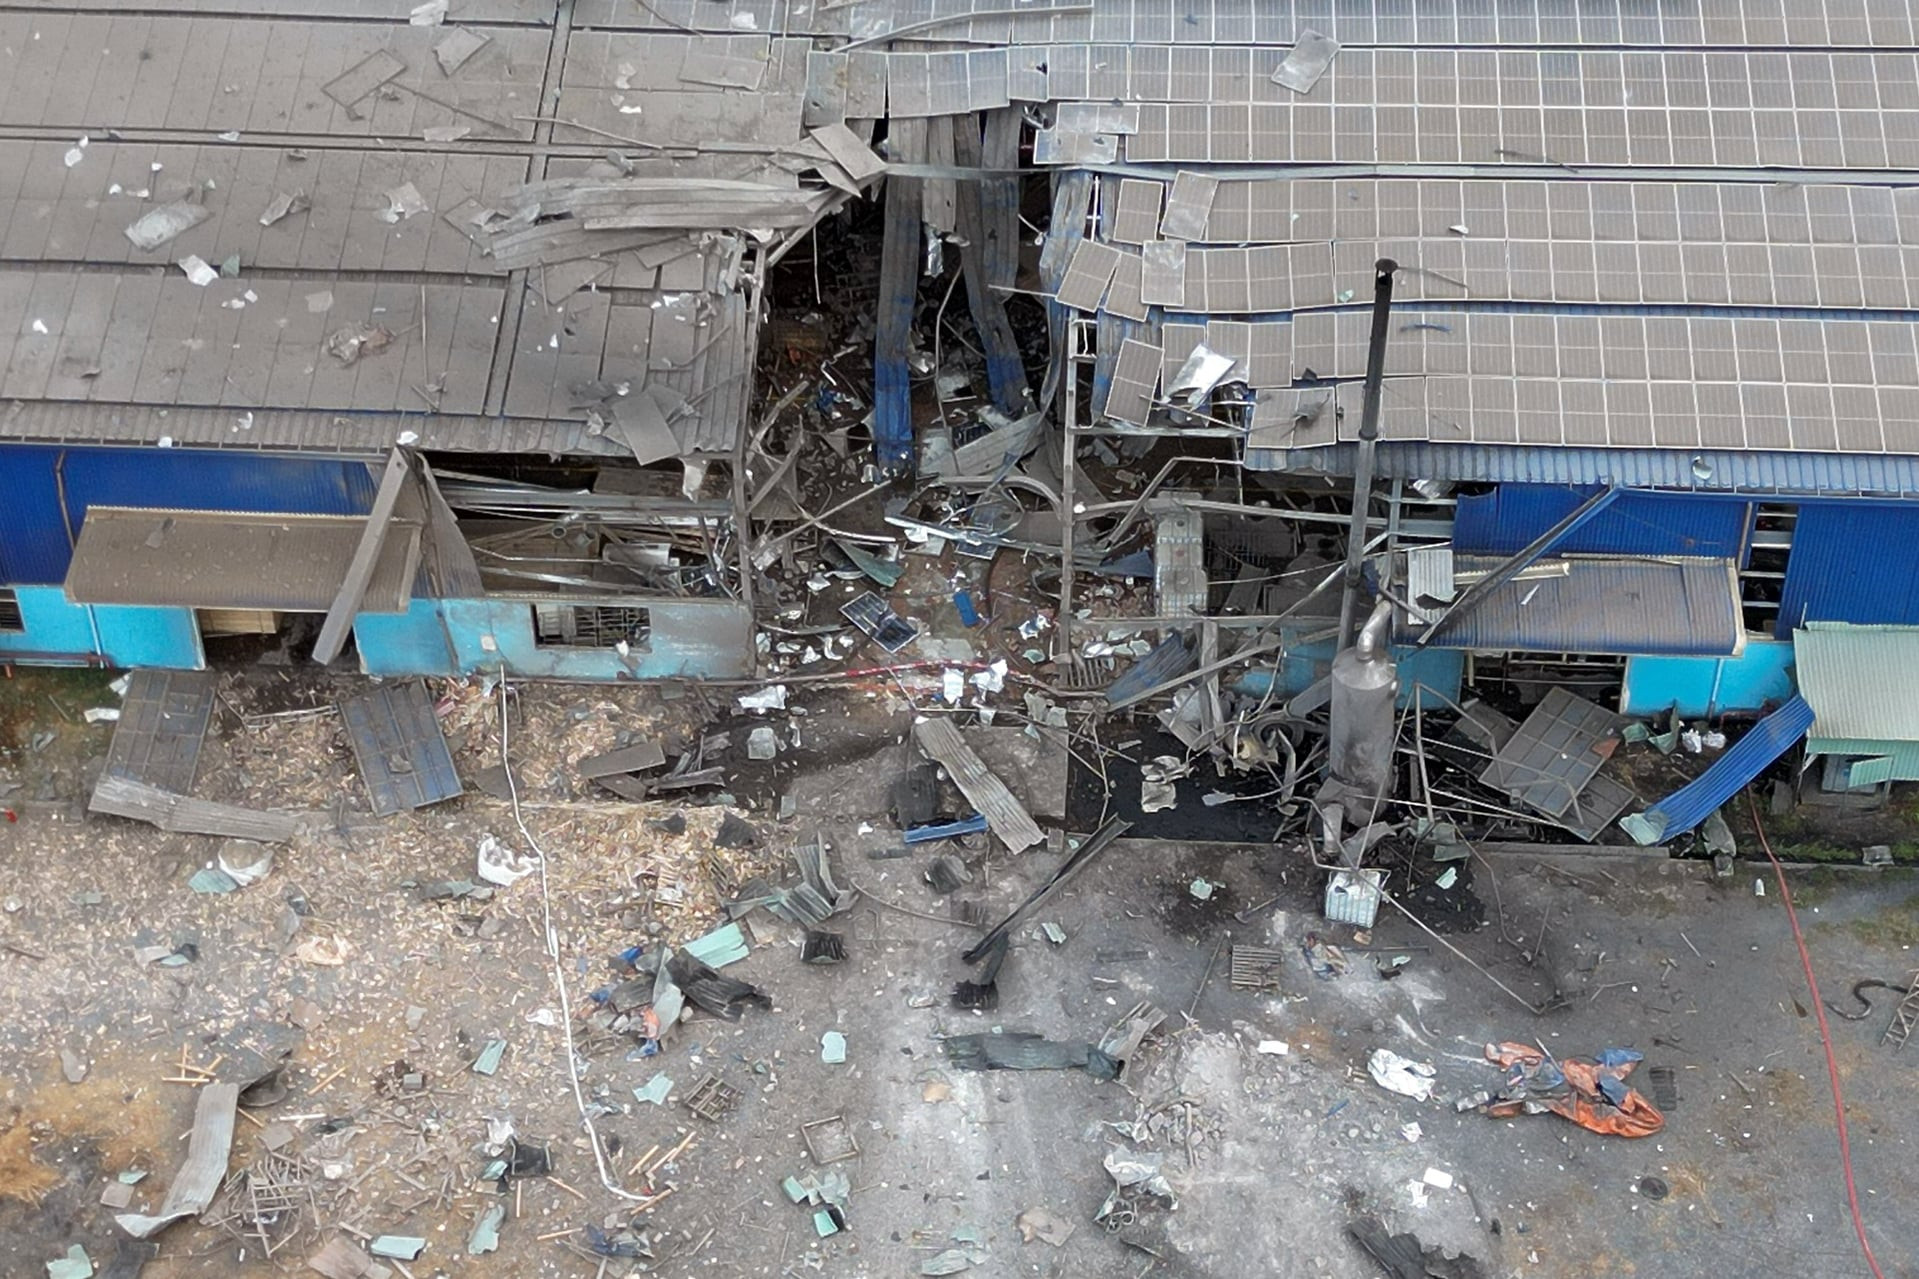 6 người tử vong do nổ lò hơi trong công ty gỗ ở Đồng Nai